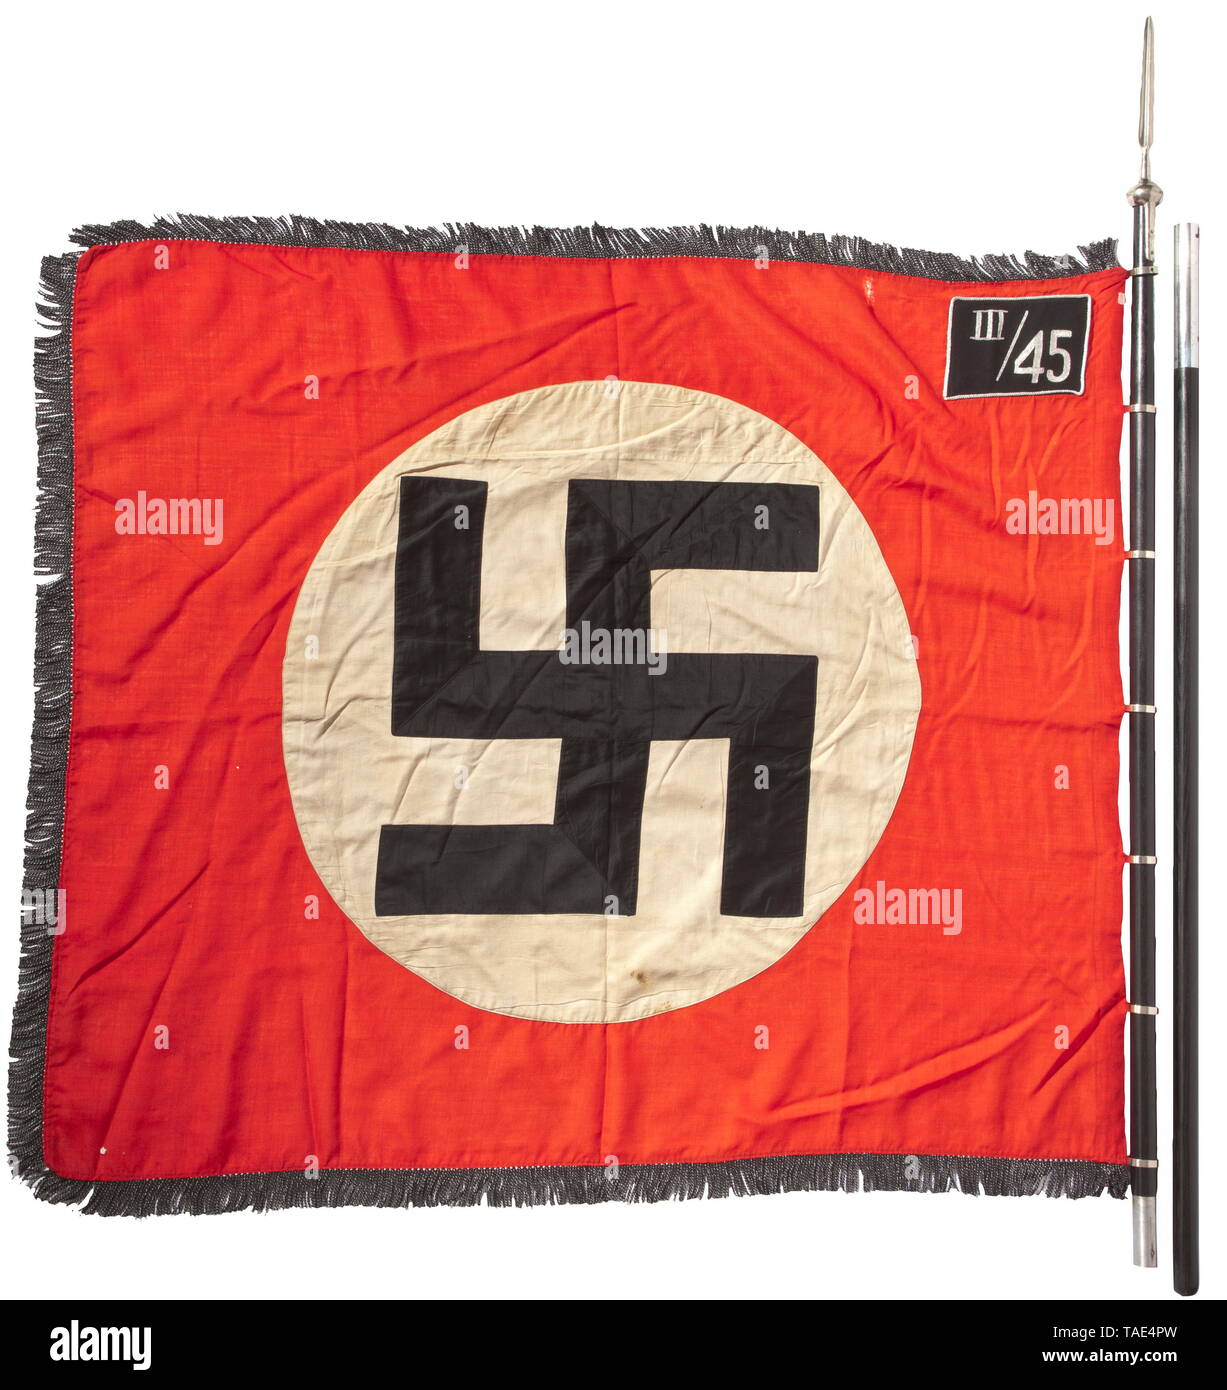 Ein SS-Sturm Flagge von III/45 in Rosenberg/Oberschlesien mit Pol und Finial Rote Fahne Stoff mit schwarz-silbernen Fransen auf drei Seiten, auf beiden Seiten mit einem GENÄHTEN - In weißen Scheibe und eine schräge Hakenkreuz mit schwarzen Flächen in silberne Schnur getrimmt. Silber bestickt" III/45' für die 3 Sturmbann (Rosenberg O. S) von 45 SS-Standarte (Neiße O.S.). Sieben direkt aufgenähten Vernickelt standard Ringe. Lieferung stanzen, kleinen Schönheitsfehlern. Abmessungen Ca. 120 x 145 cm. Zweiteilige schwarze hölzerne Flagstaff. Vernickelt finial in Form einer Lanze Tipp, Gelocht' RZM M 3/39/40, Editorial-Use - Nur Stockfoto